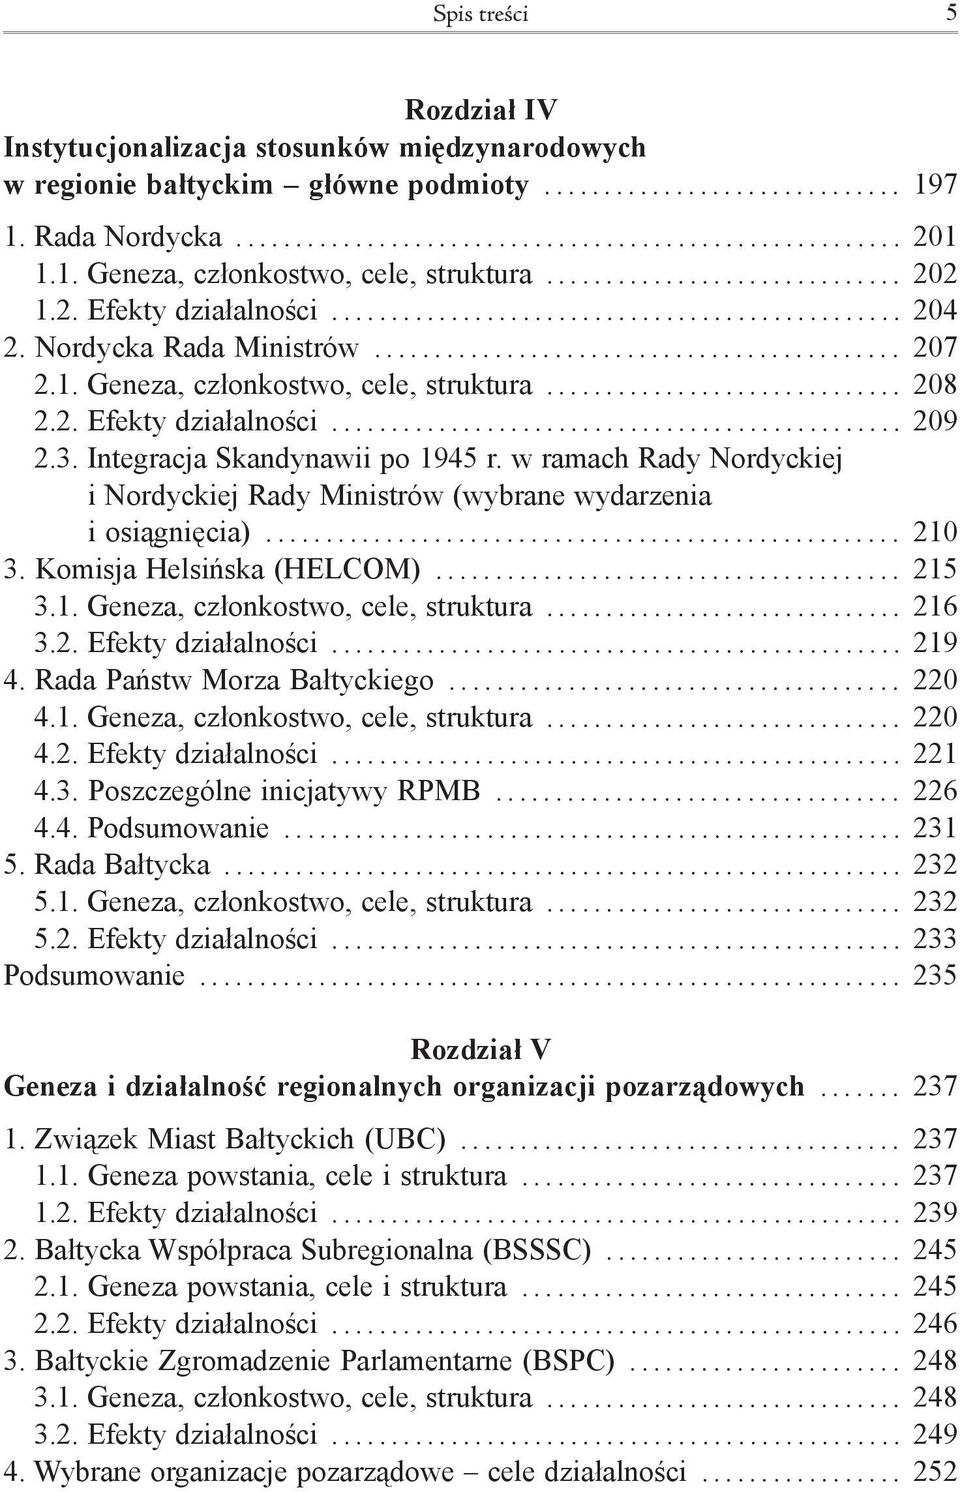 Integracja Skandynawii po 1945 r. w ramach Rady Nordyckiej i Nordyckiej Rady Ministrów (wybrane wydarzenia i osiągnięcia)... 210 3. Komisja Helsińska (HELCOM)... 215 3.1. Geneza, członkostwo, cele, struktura.